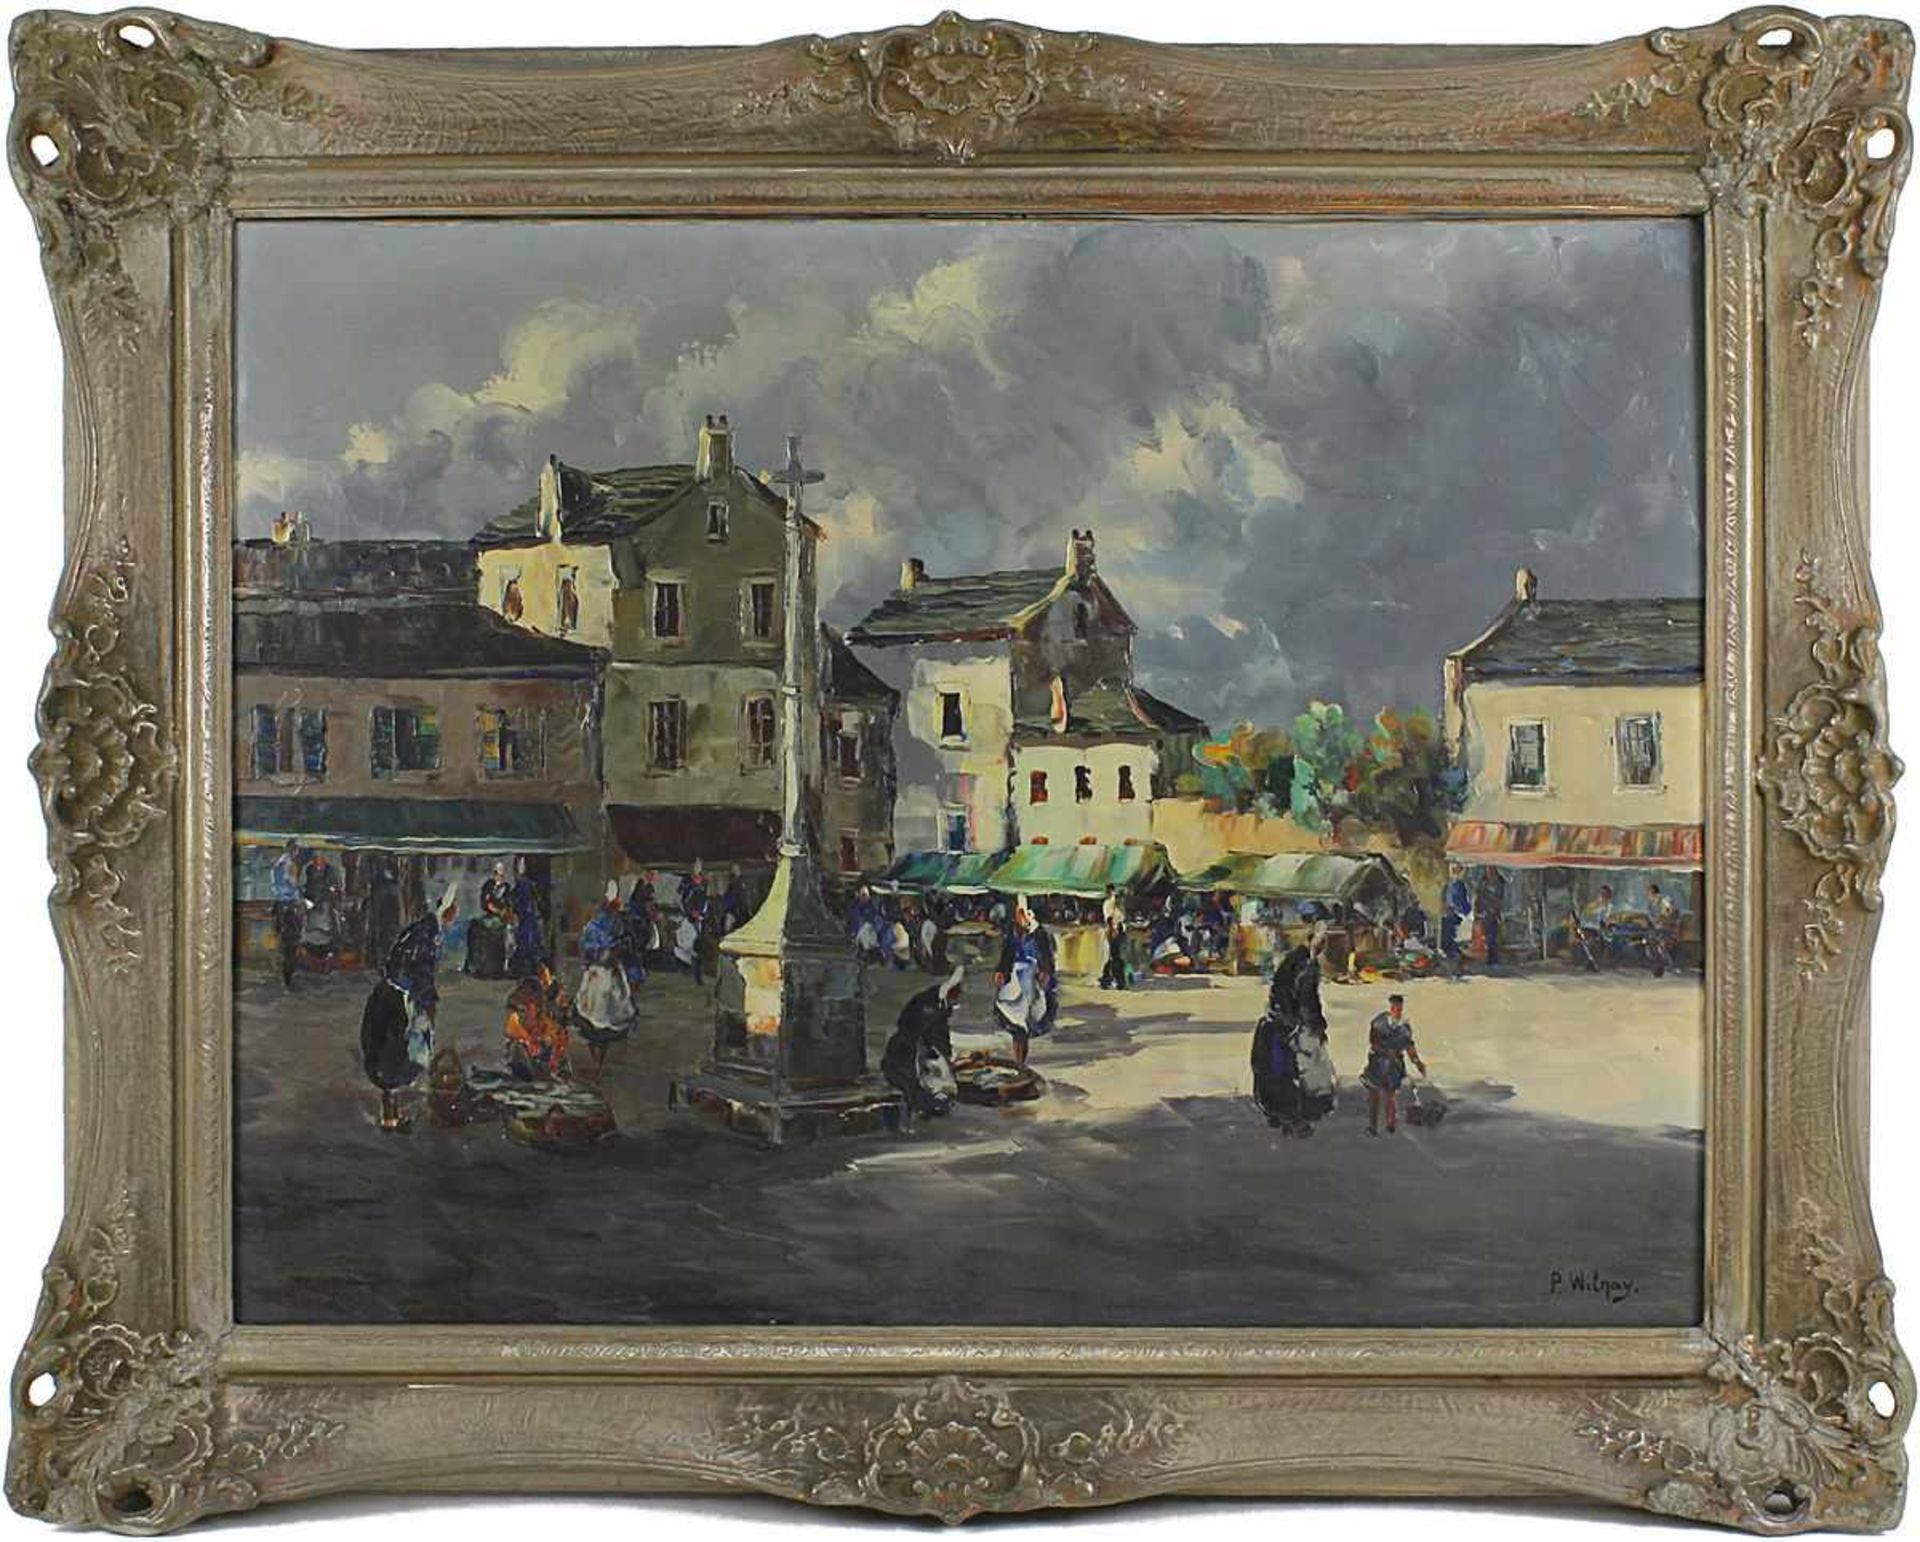 Wilnay, P. (Maler 20. Jh.), Marktplatz wohl einer bretonischen Kleinstadt, Öl auf Leinwand, rechts